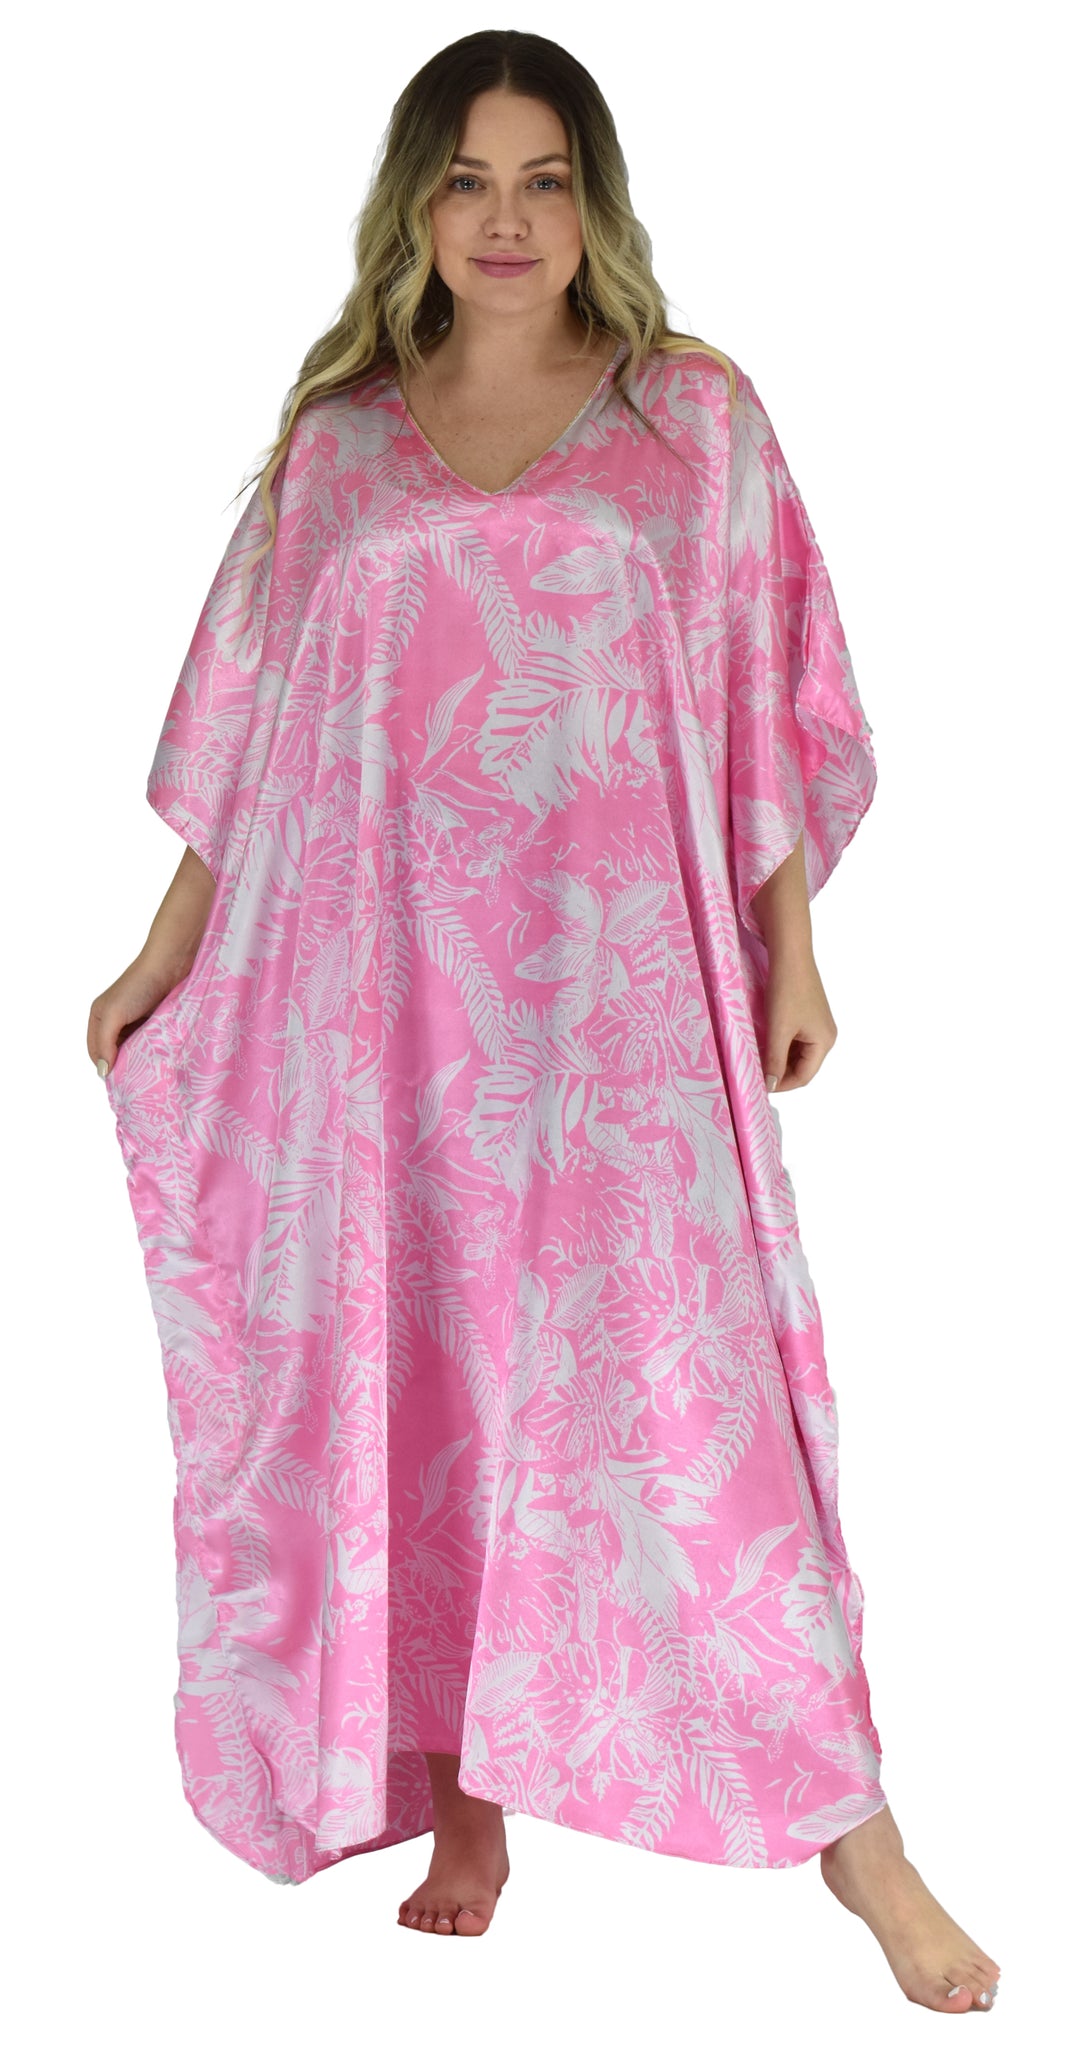 Women's Long Satin Caftan / Kaftan / Muumuu, Spheroid Floral Print in Pink, Style Caf-15P